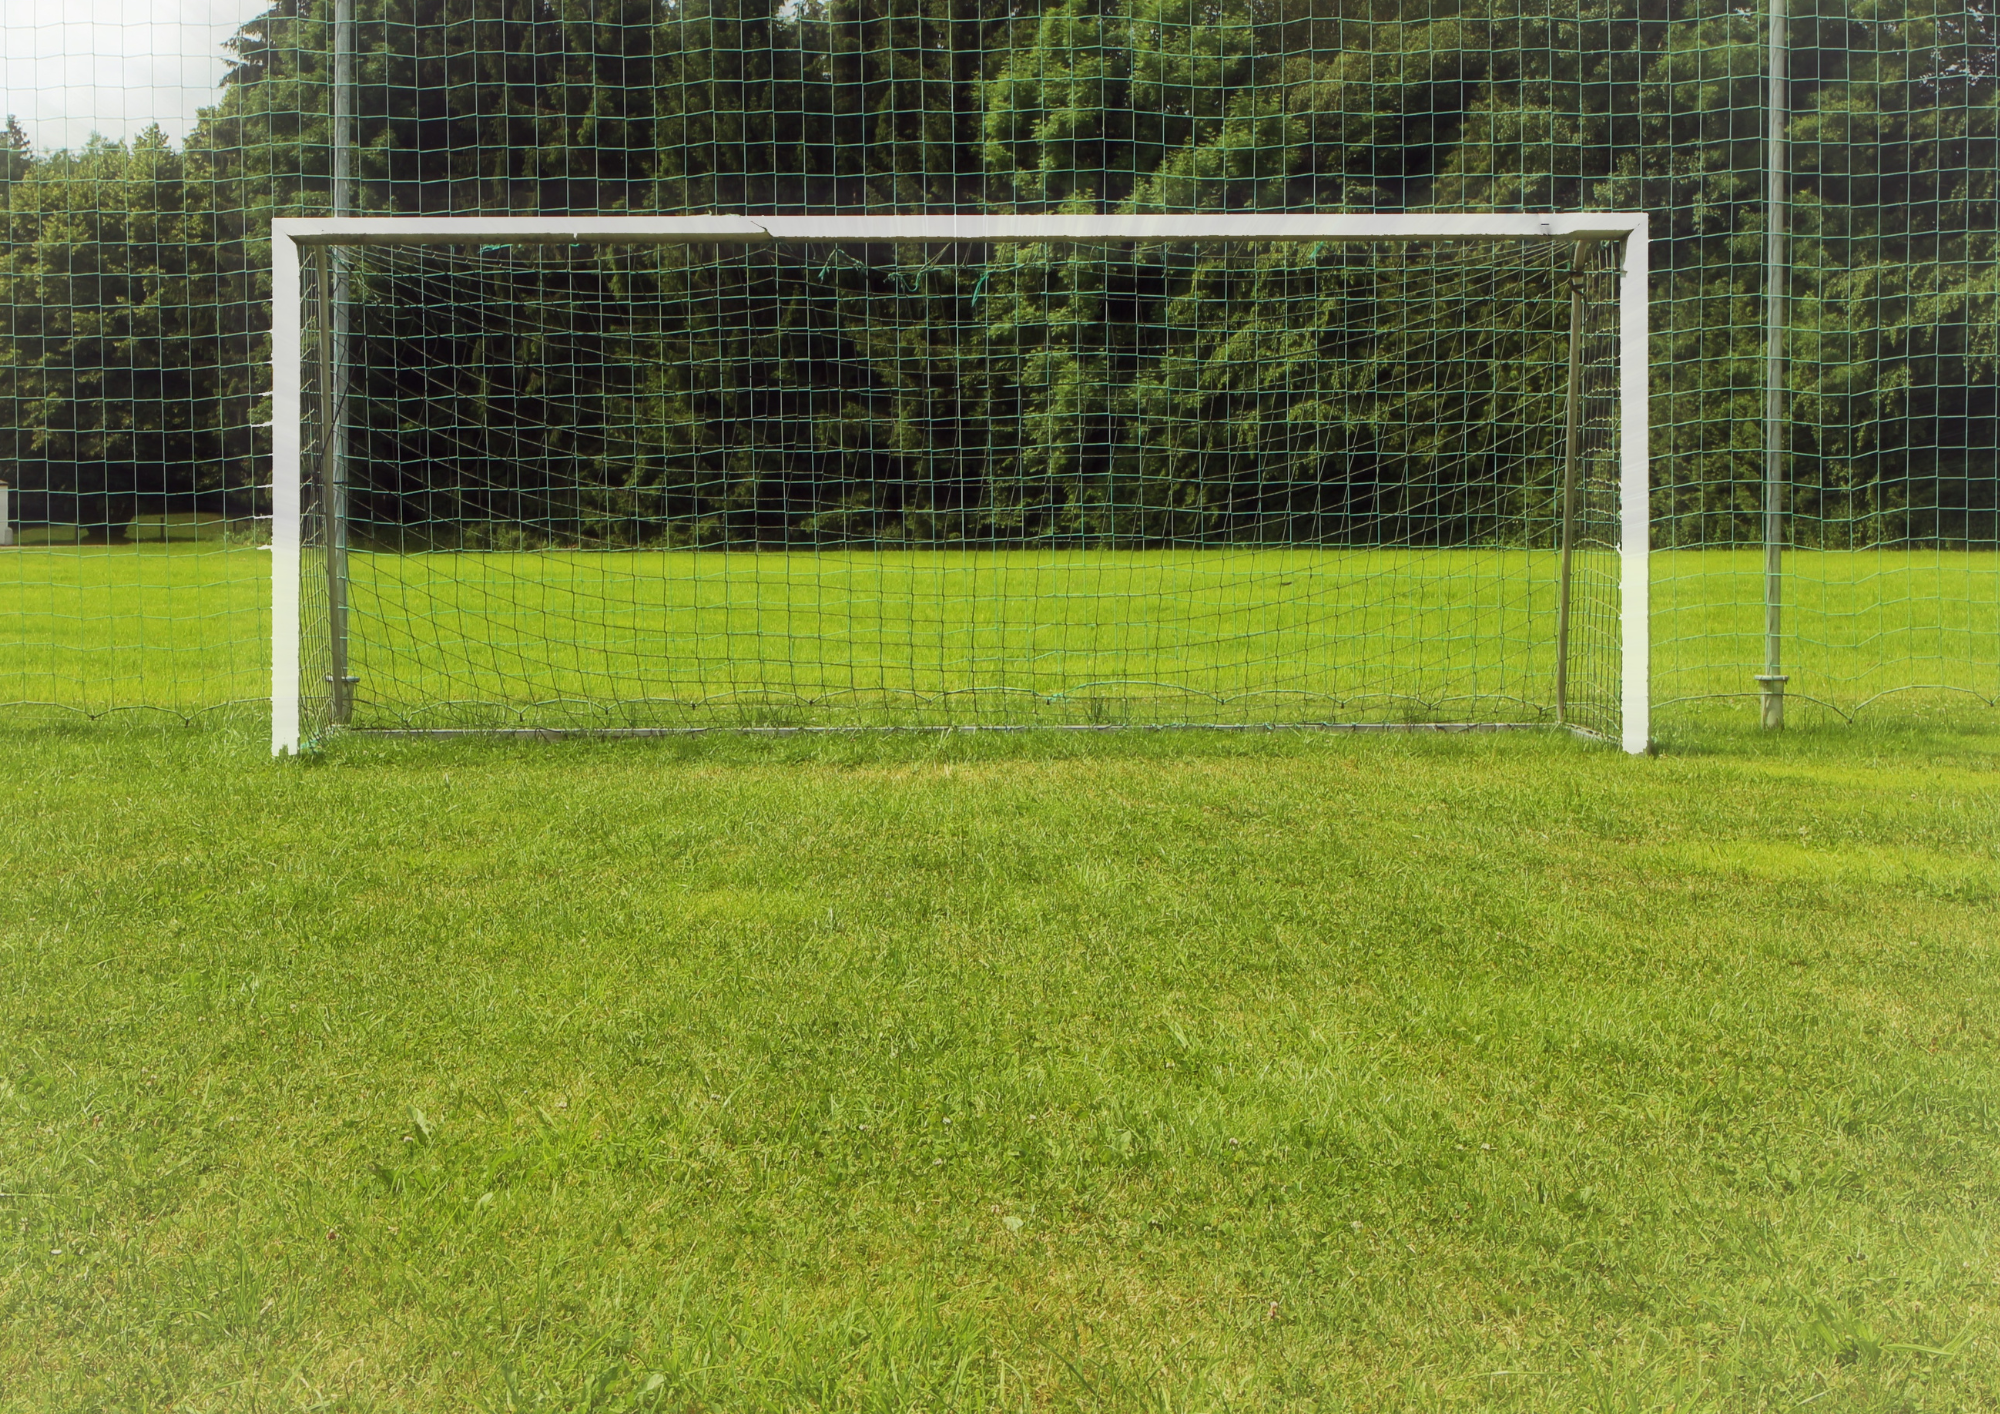 Football goal on a field.